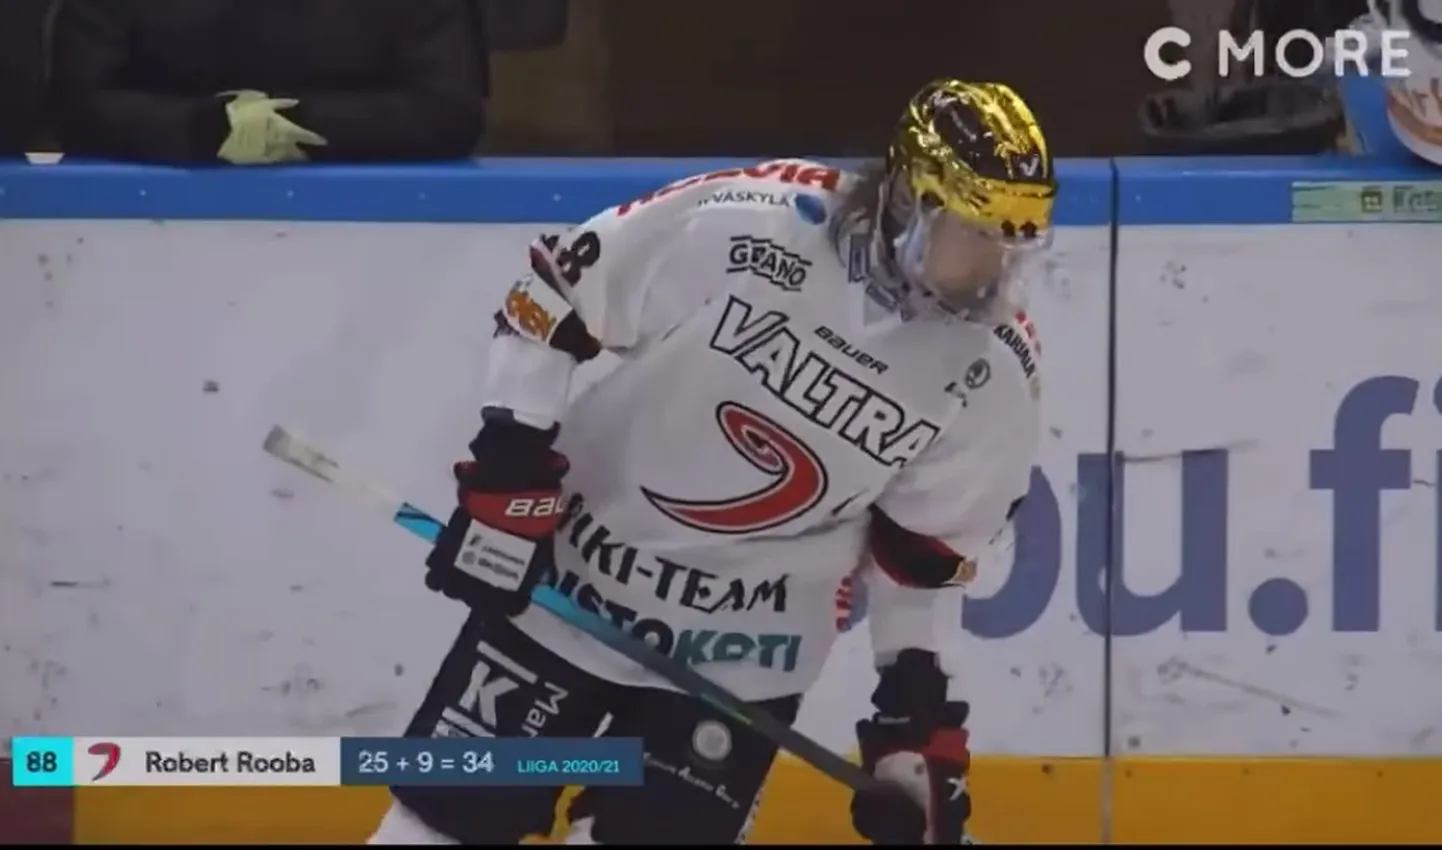 Eesti jäähokimängija Robert Rooba lööb Soomes laineid.